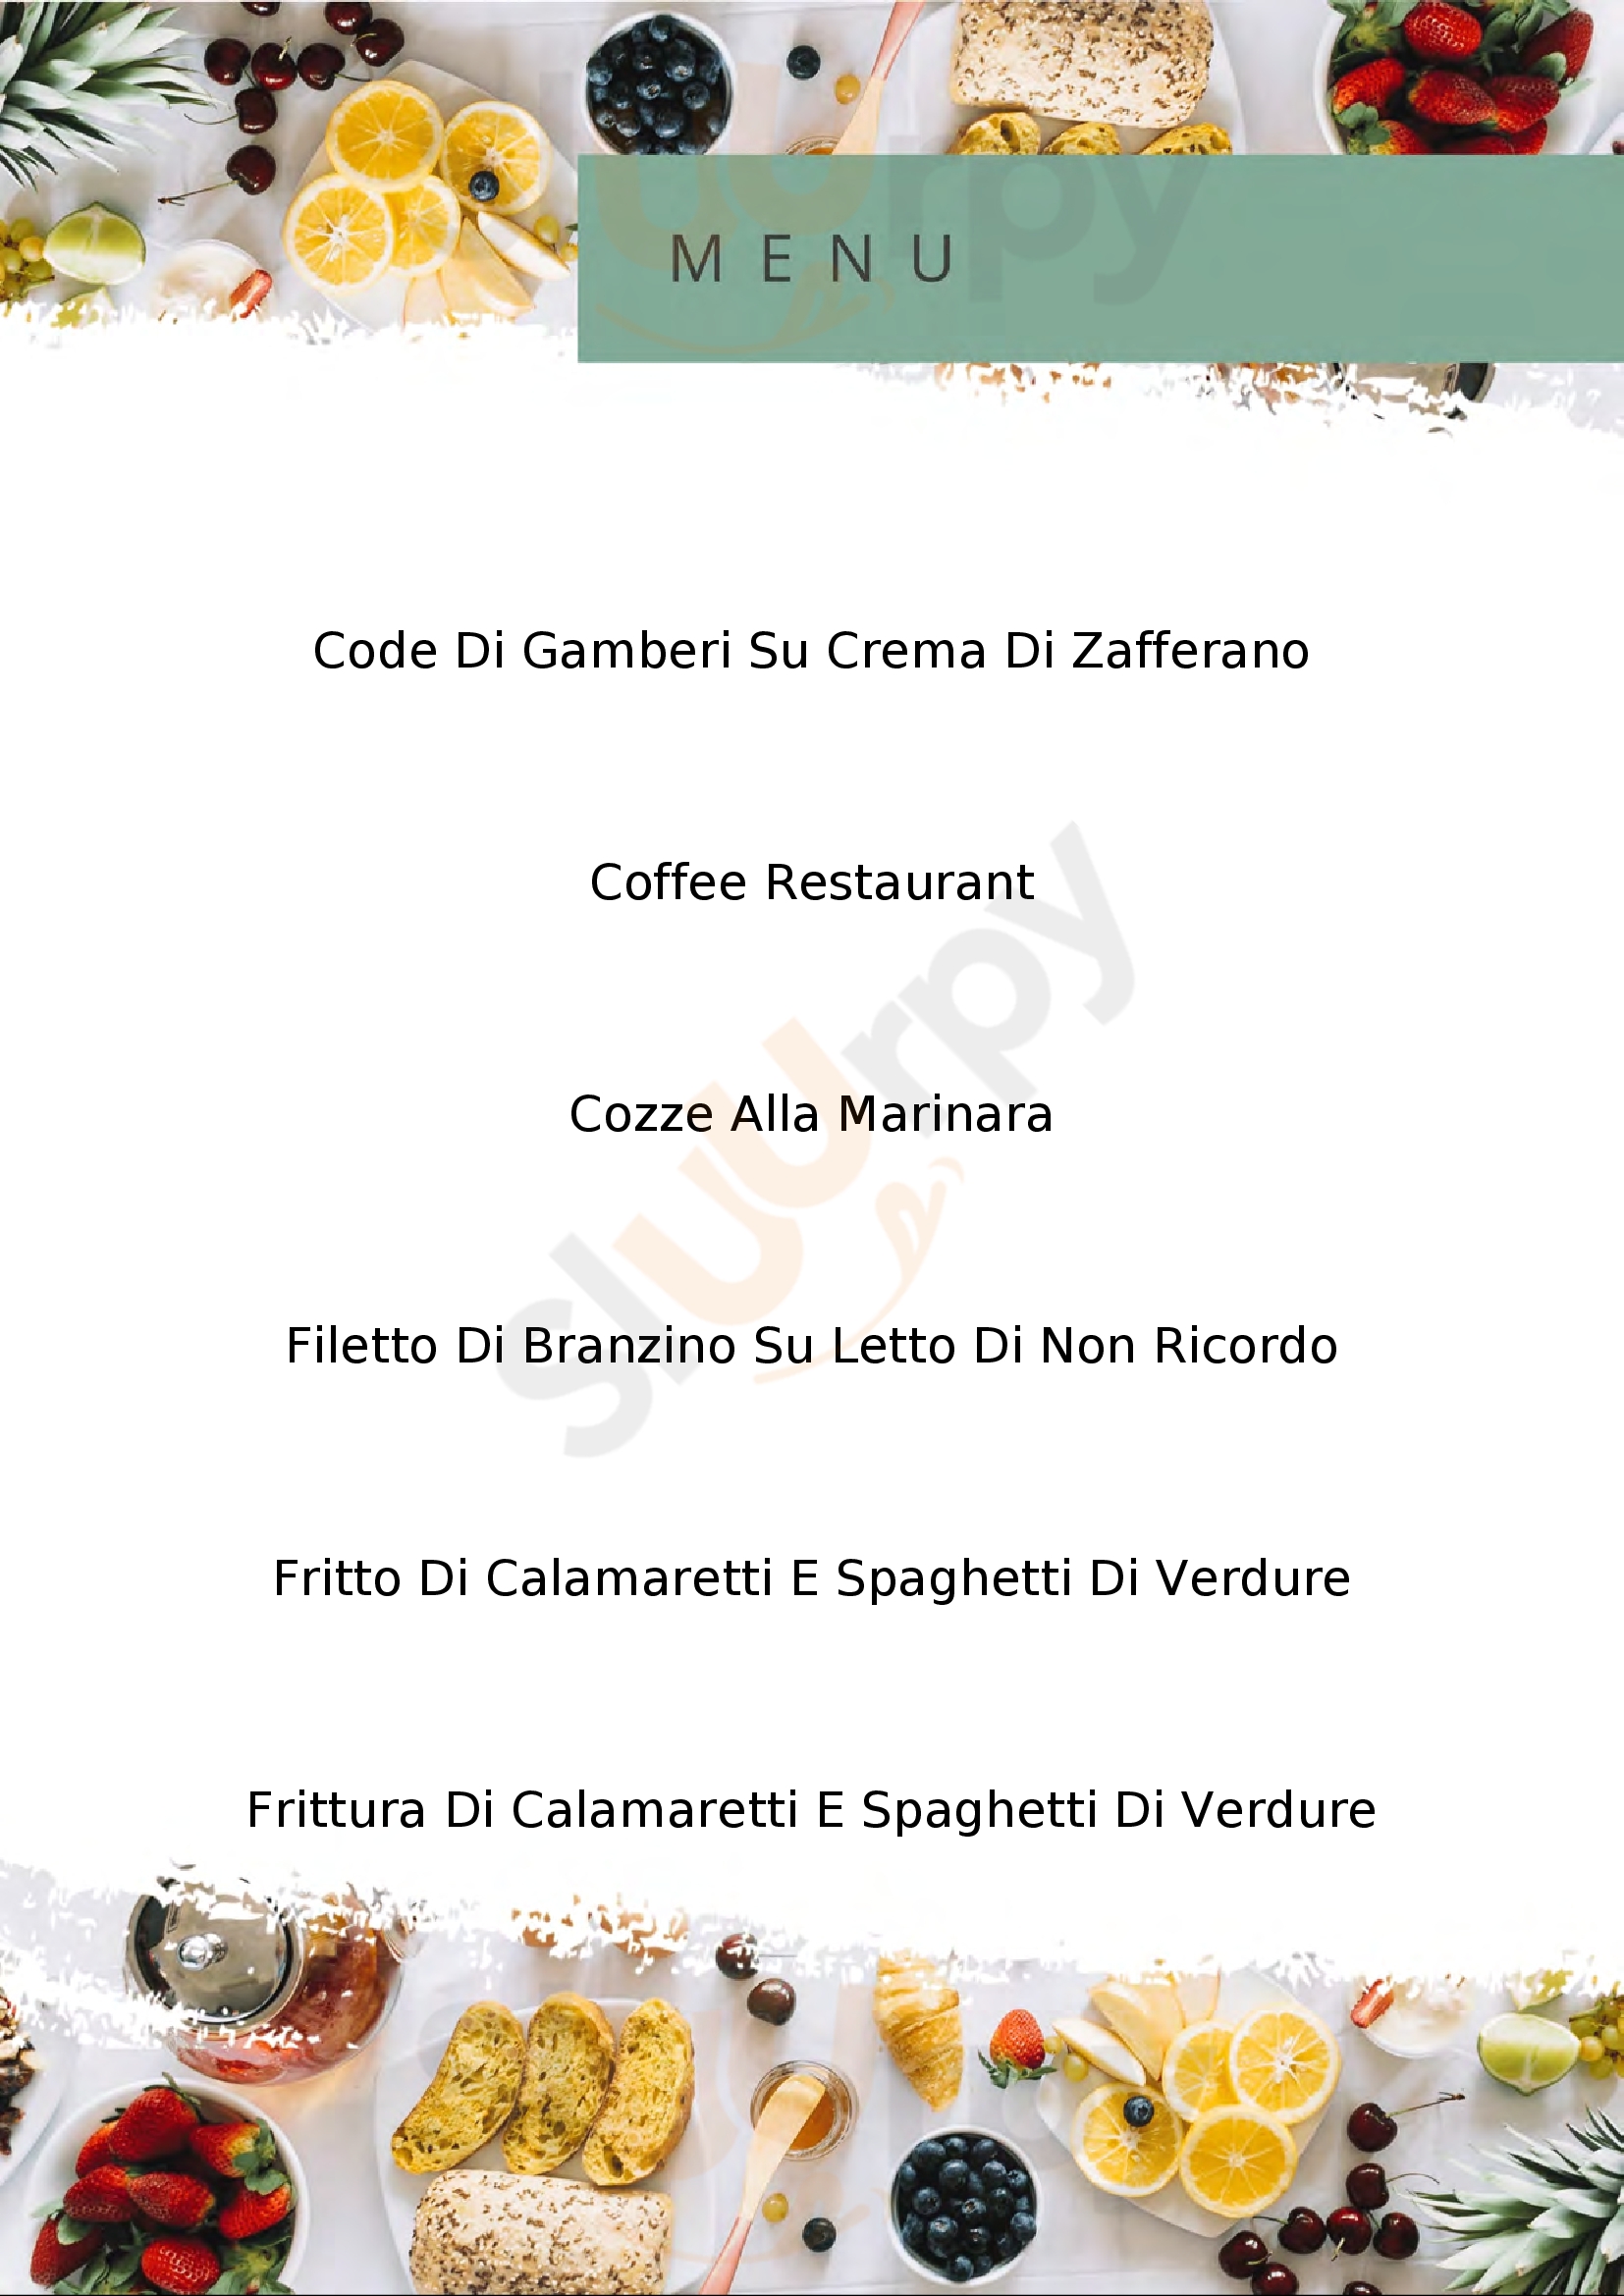 Good Restaurant & Drinks Senago menù 1 pagina